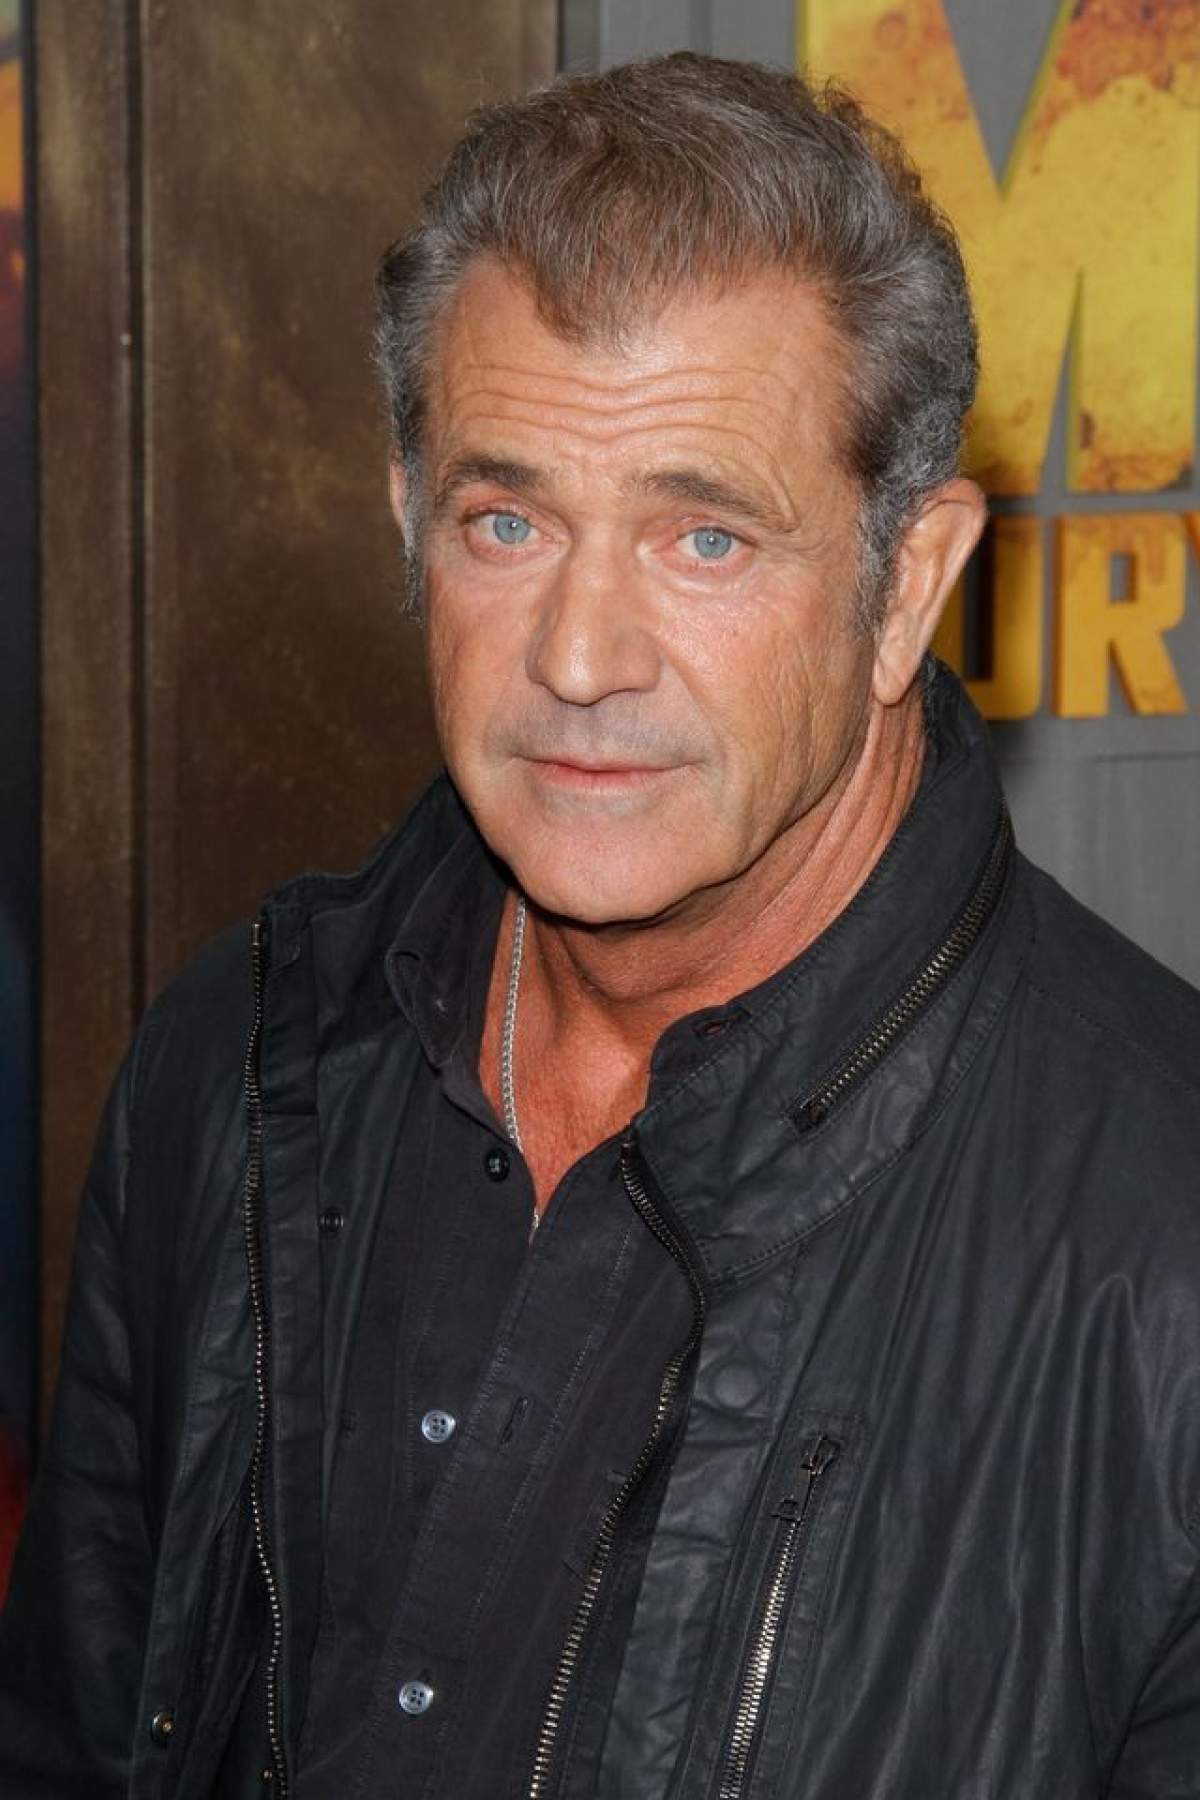 Mel Gibson, suspectat că a agresat fizic şi verbal o jurnalistă: "Am fost împinsă şi lovită în spate!"